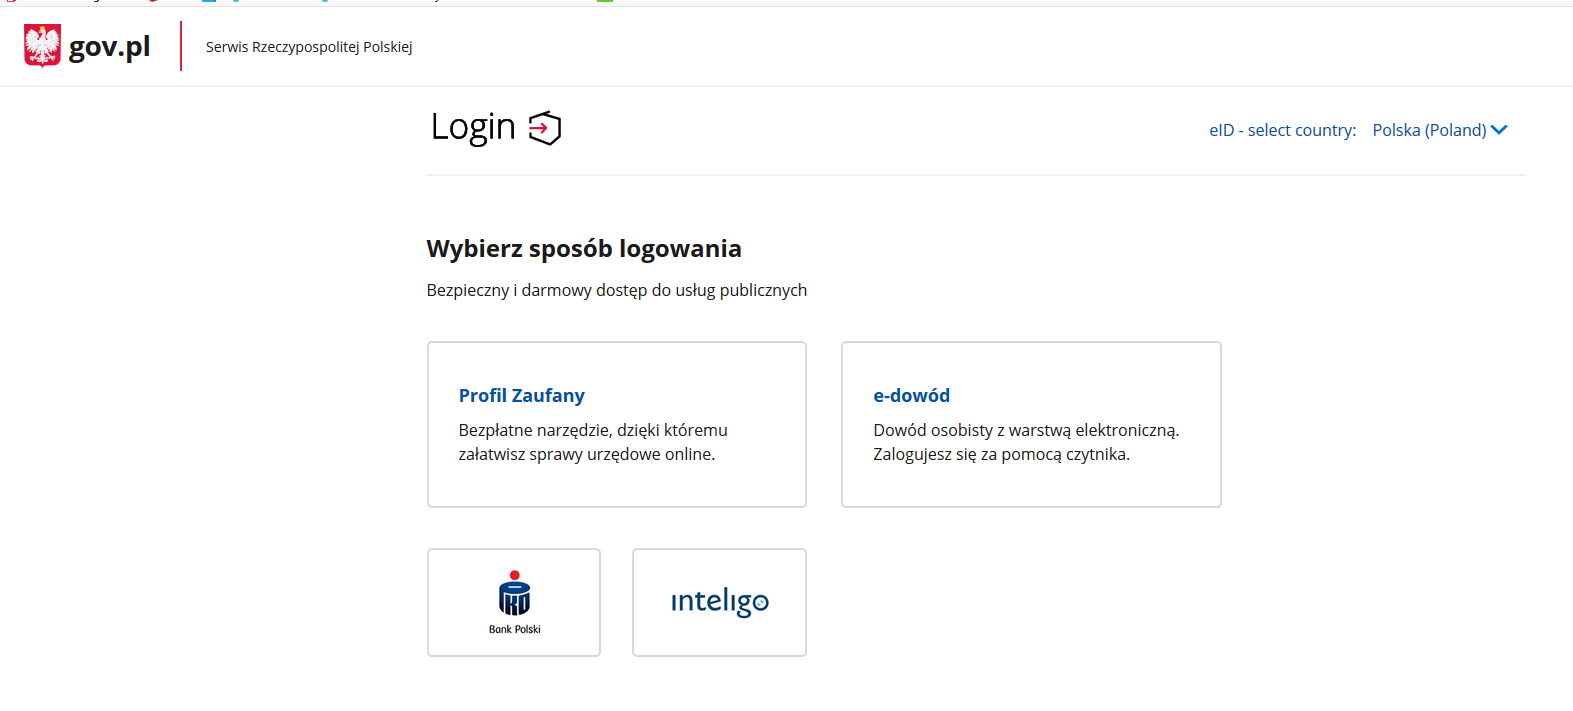 Screen ze strony gov.pl pokazujący wybór sposobu logowania.